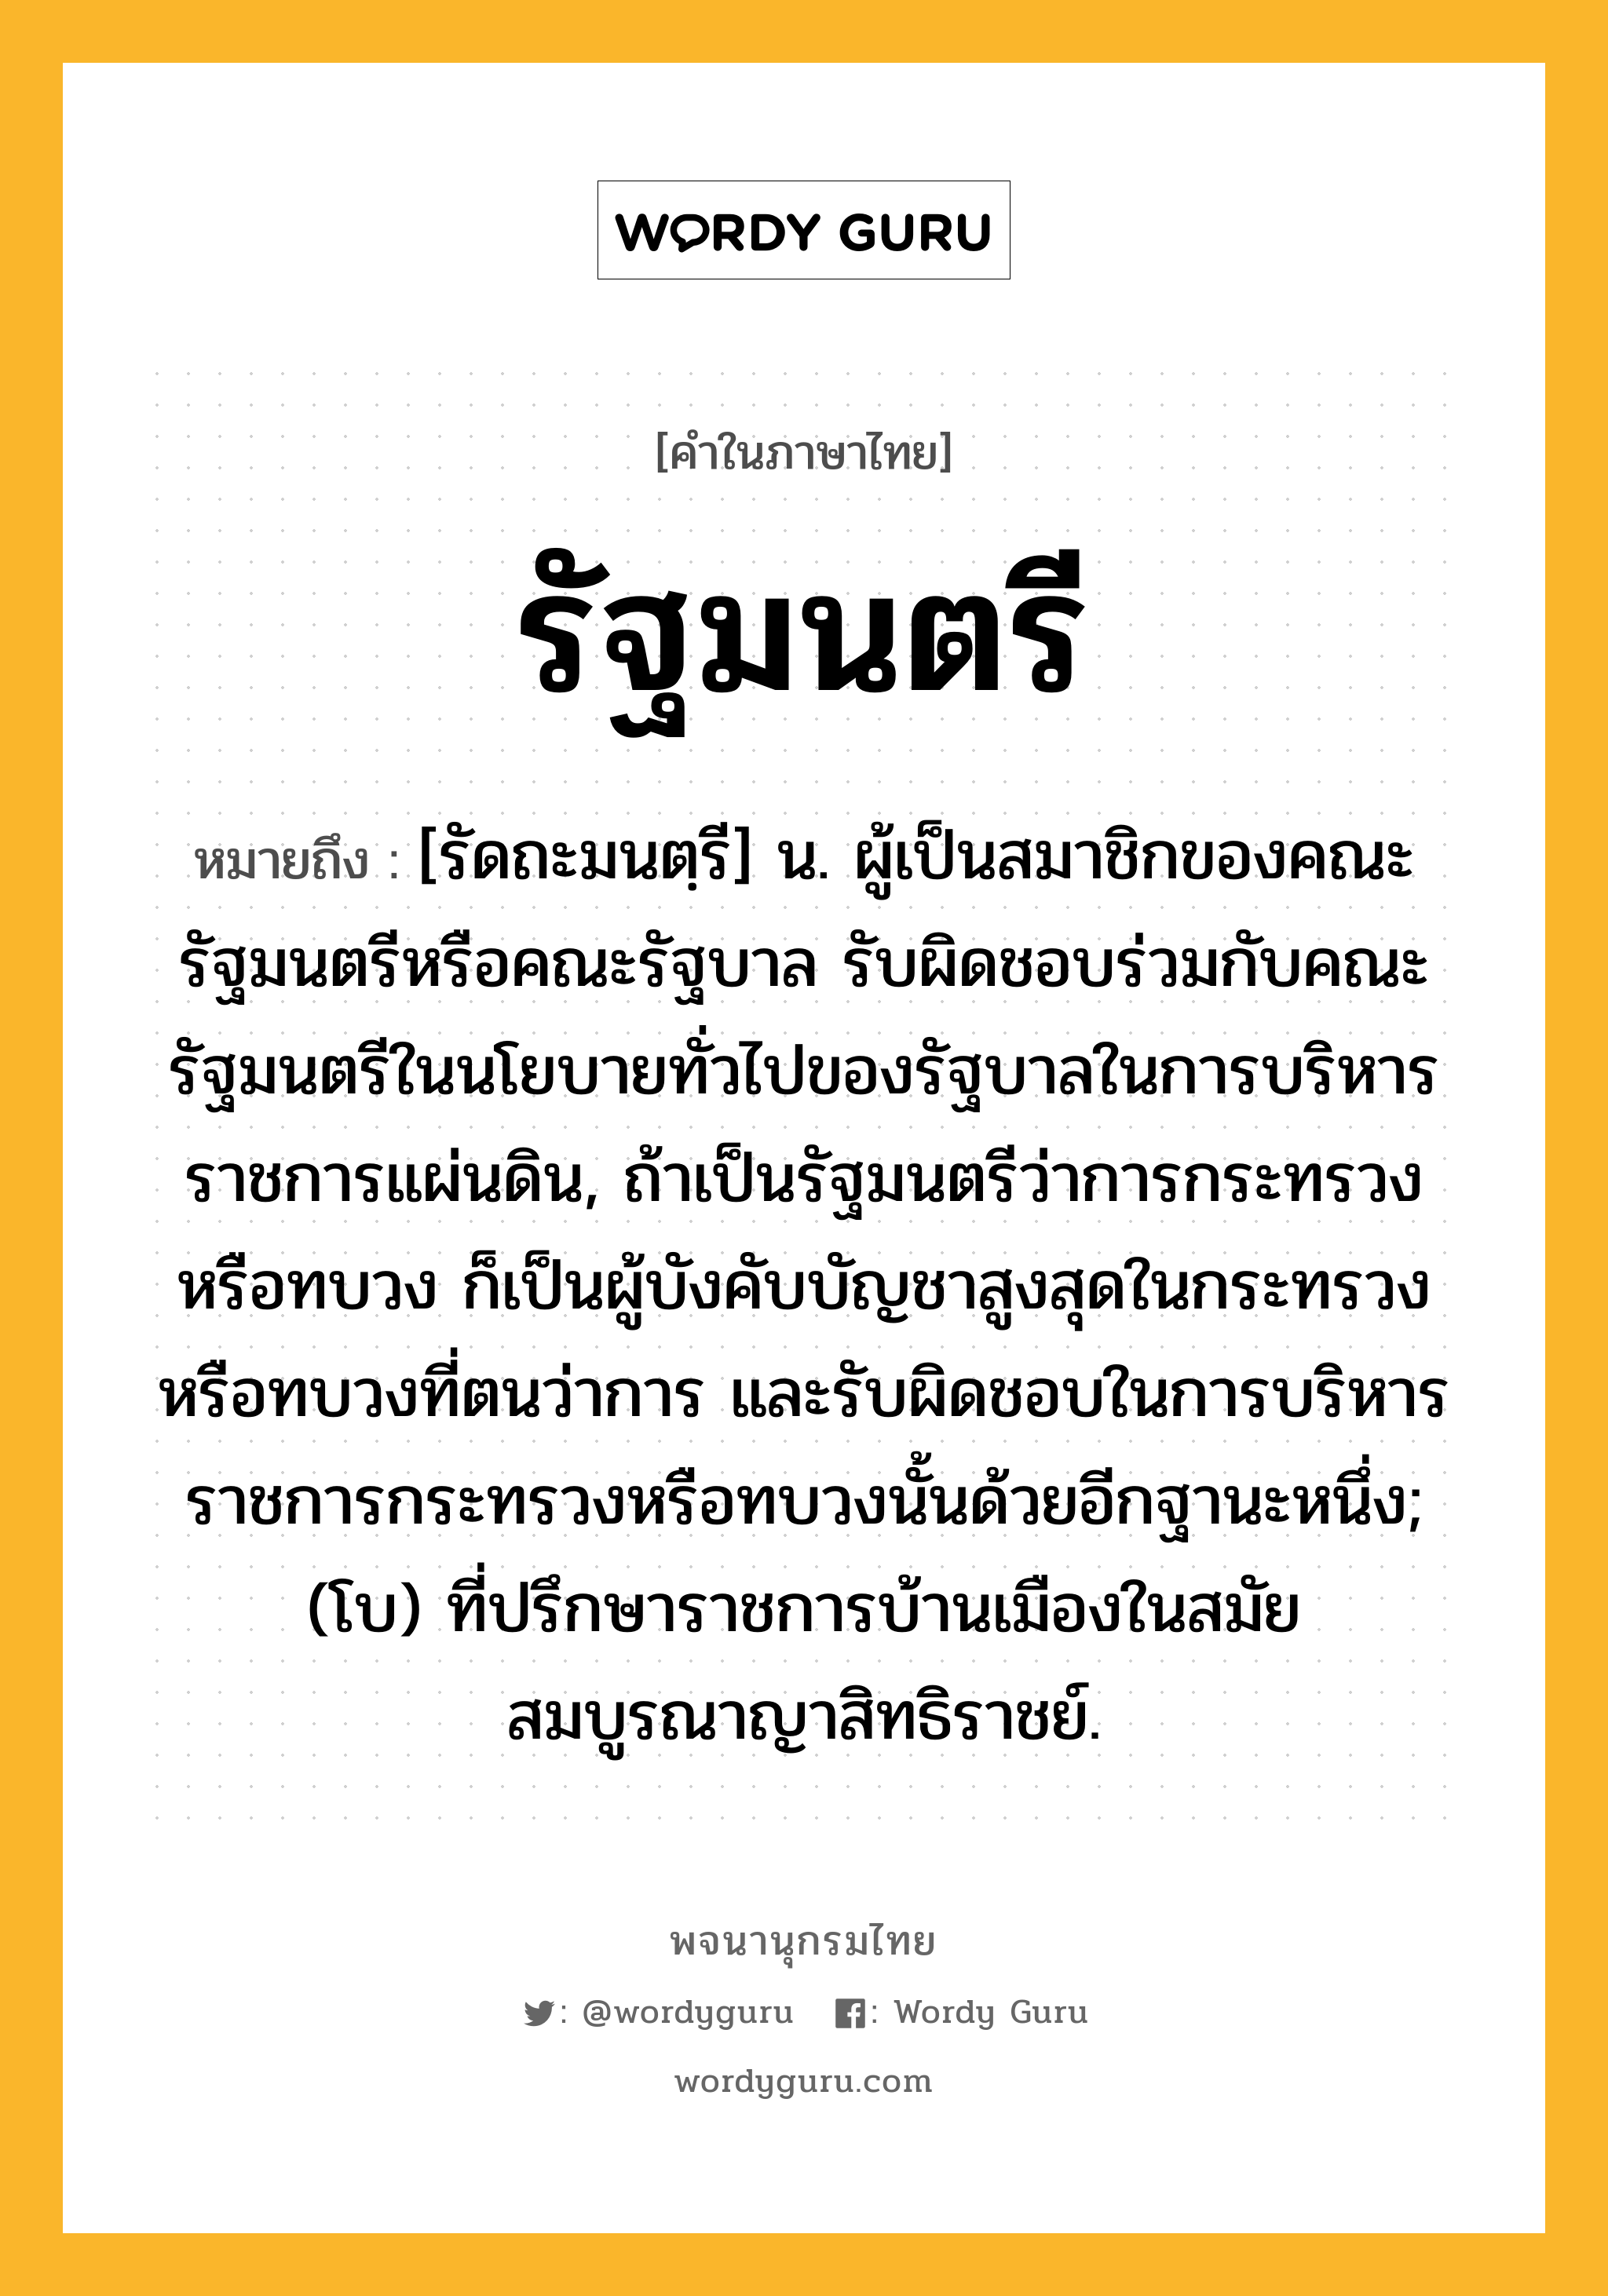 รัฐมนตรี หมายถึงอะไร?, คำในภาษาไทย รัฐมนตรี หมายถึง [รัดถะมนตฺรี] น. ผู้เป็นสมาชิกของคณะรัฐมนตรีหรือคณะรัฐบาล รับผิดชอบร่วมกับคณะรัฐมนตรีในนโยบายทั่วไปของรัฐบาลในการบริหารราชการแผ่นดิน, ถ้าเป็นรัฐมนตรีว่าการกระทรวงหรือทบวง ก็เป็นผู้บังคับบัญชาสูงสุดในกระทรวงหรือทบวงที่ตนว่าการ และรับผิดชอบในการบริหารราชการกระทรวงหรือทบวงนั้นด้วยอีกฐานะหนึ่ง; (โบ) ที่ปรึกษาราชการบ้านเมืองในสมัยสมบูรณาญาสิทธิราชย์.